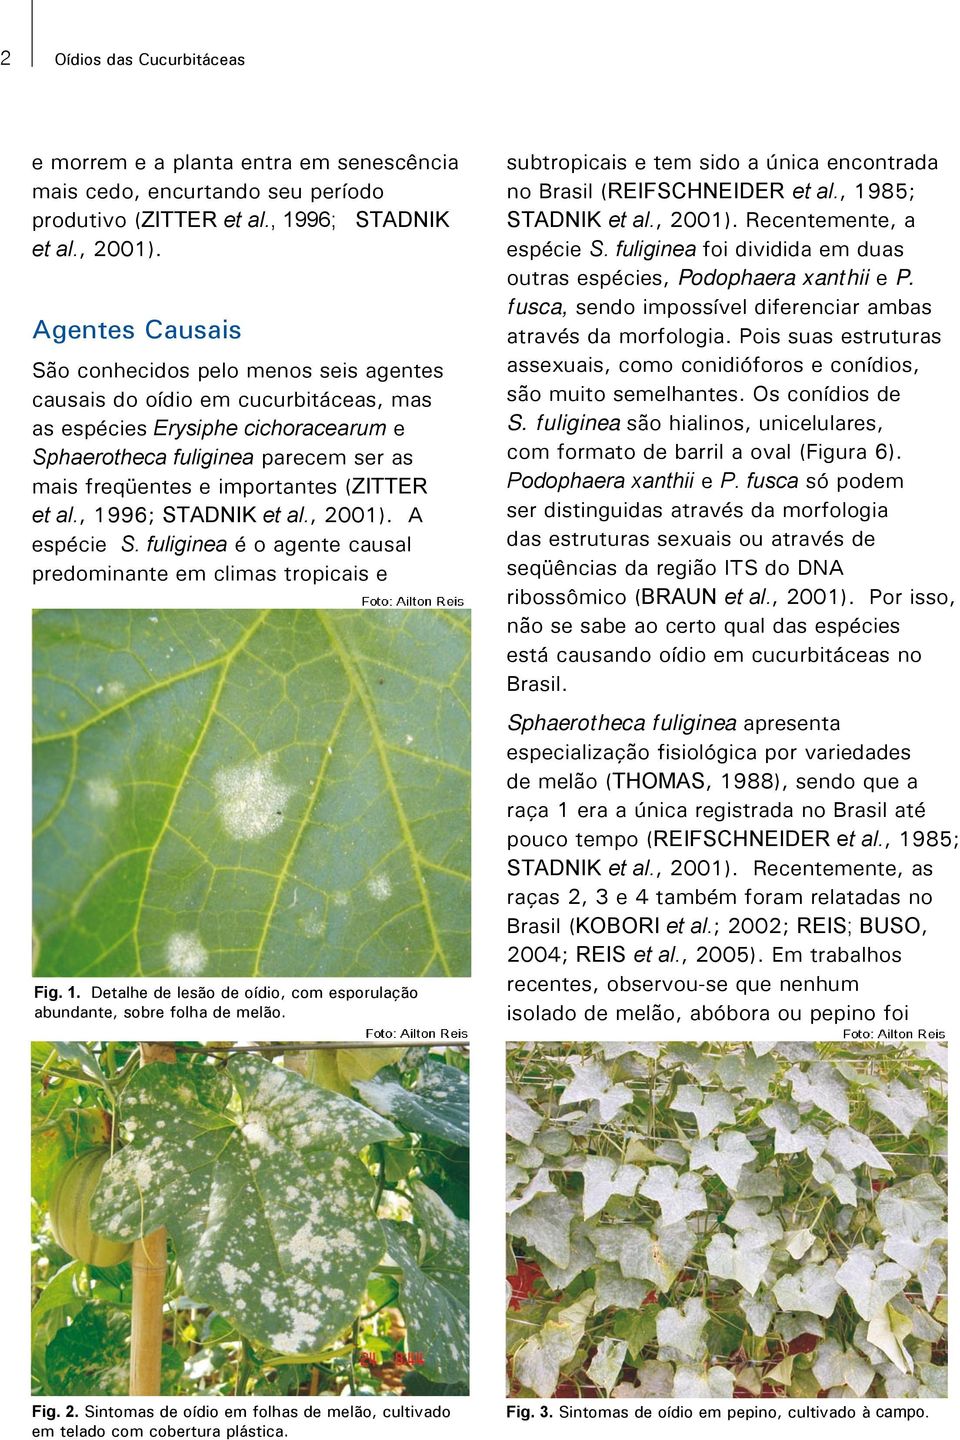 (ZITTER et al., 1996; STADNIK et al., 2001). A espécie S. fuliginea é o agente causal predominante em climas tropicais e Fig. 1. Detalhe de lesão de oídio, com esporulação abundante, sobre folha de melão.